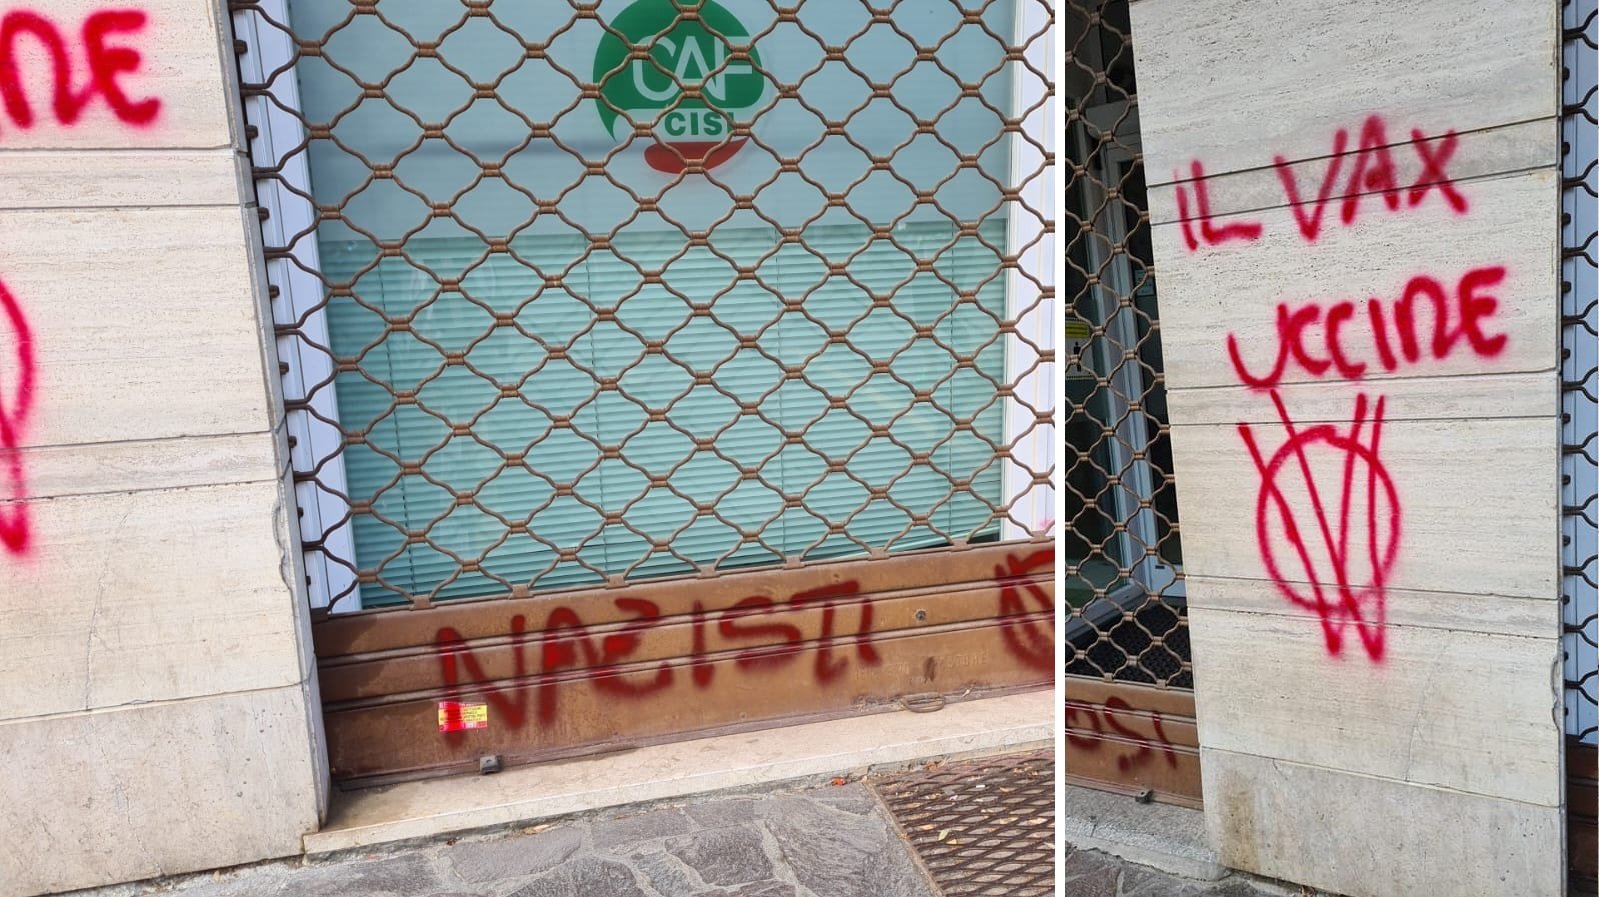 Imbrattata la sede Cisl di Acqui Terme con scritte no vax: “Faremo denuncia”